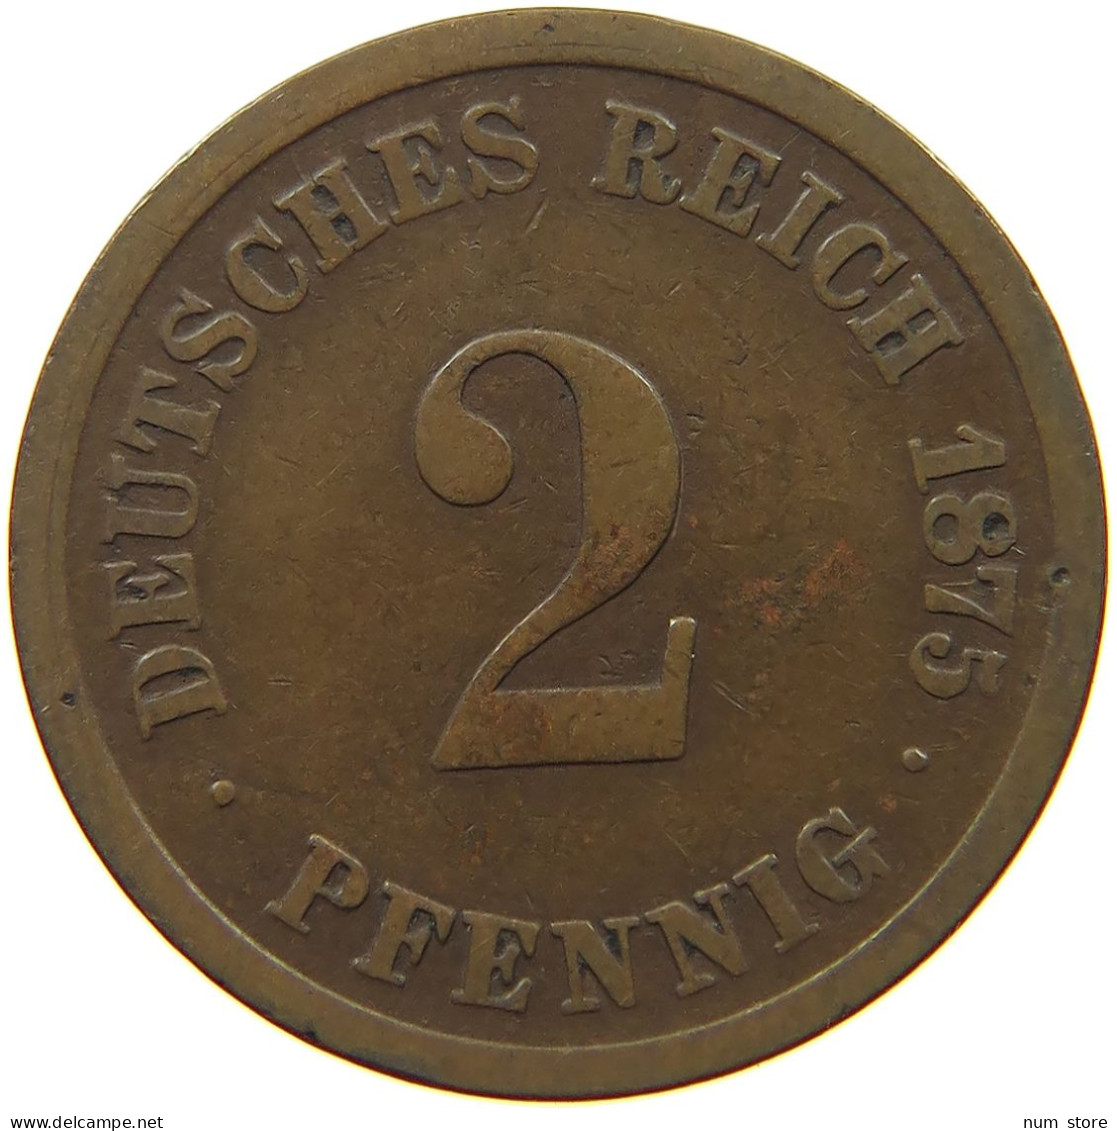 GERMANY EMPIRE 2 PFENNIG 1875 D #s068 0421 - 2 Pfennig